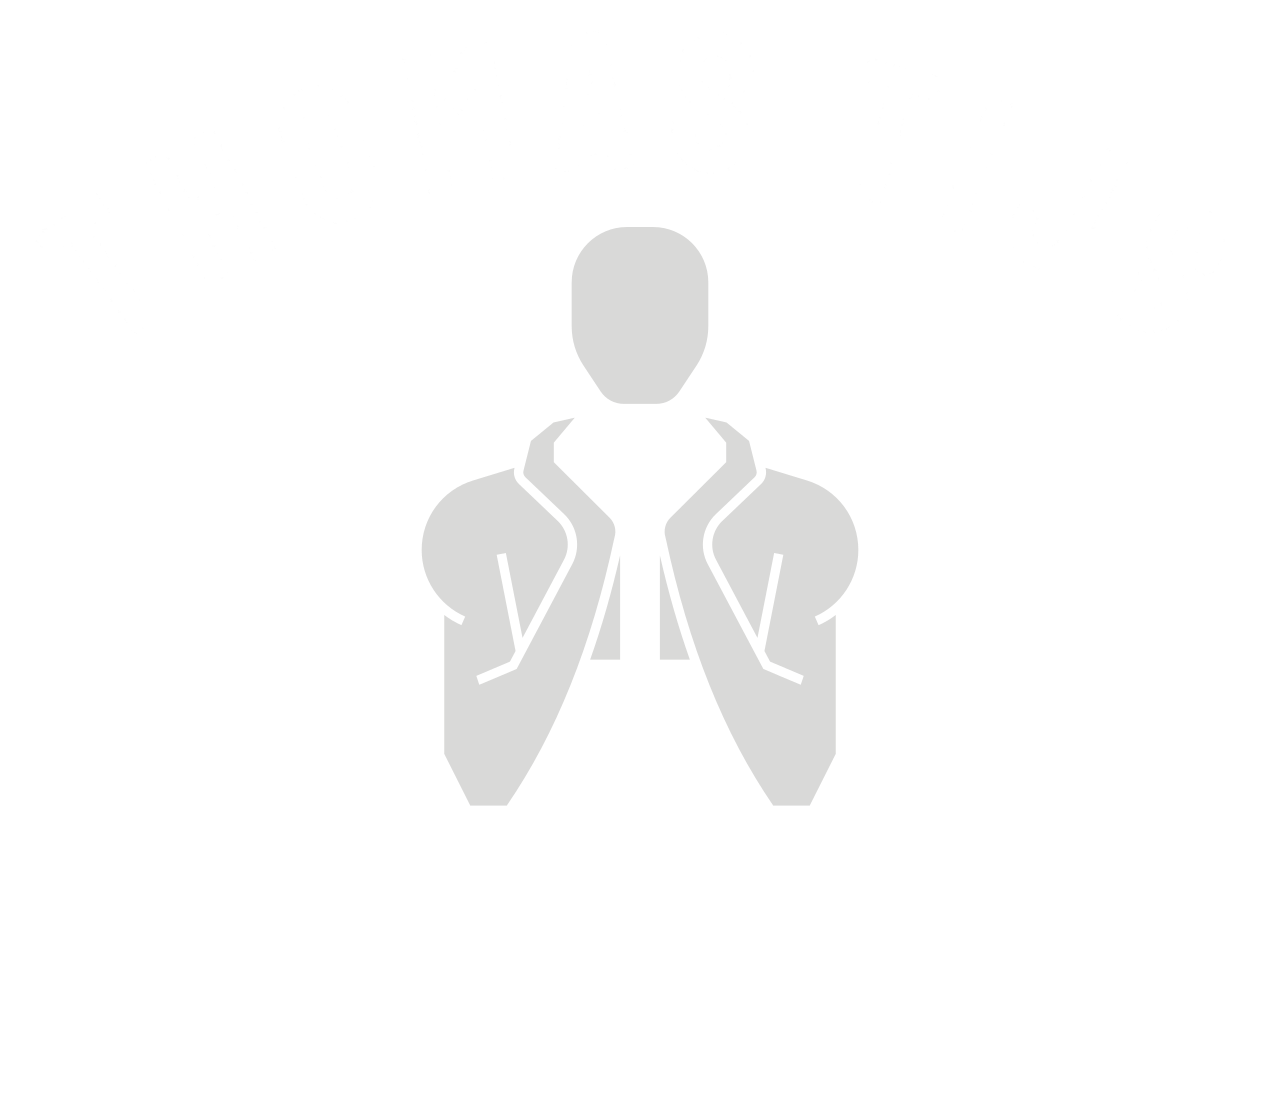 Thomas Tijs's web page